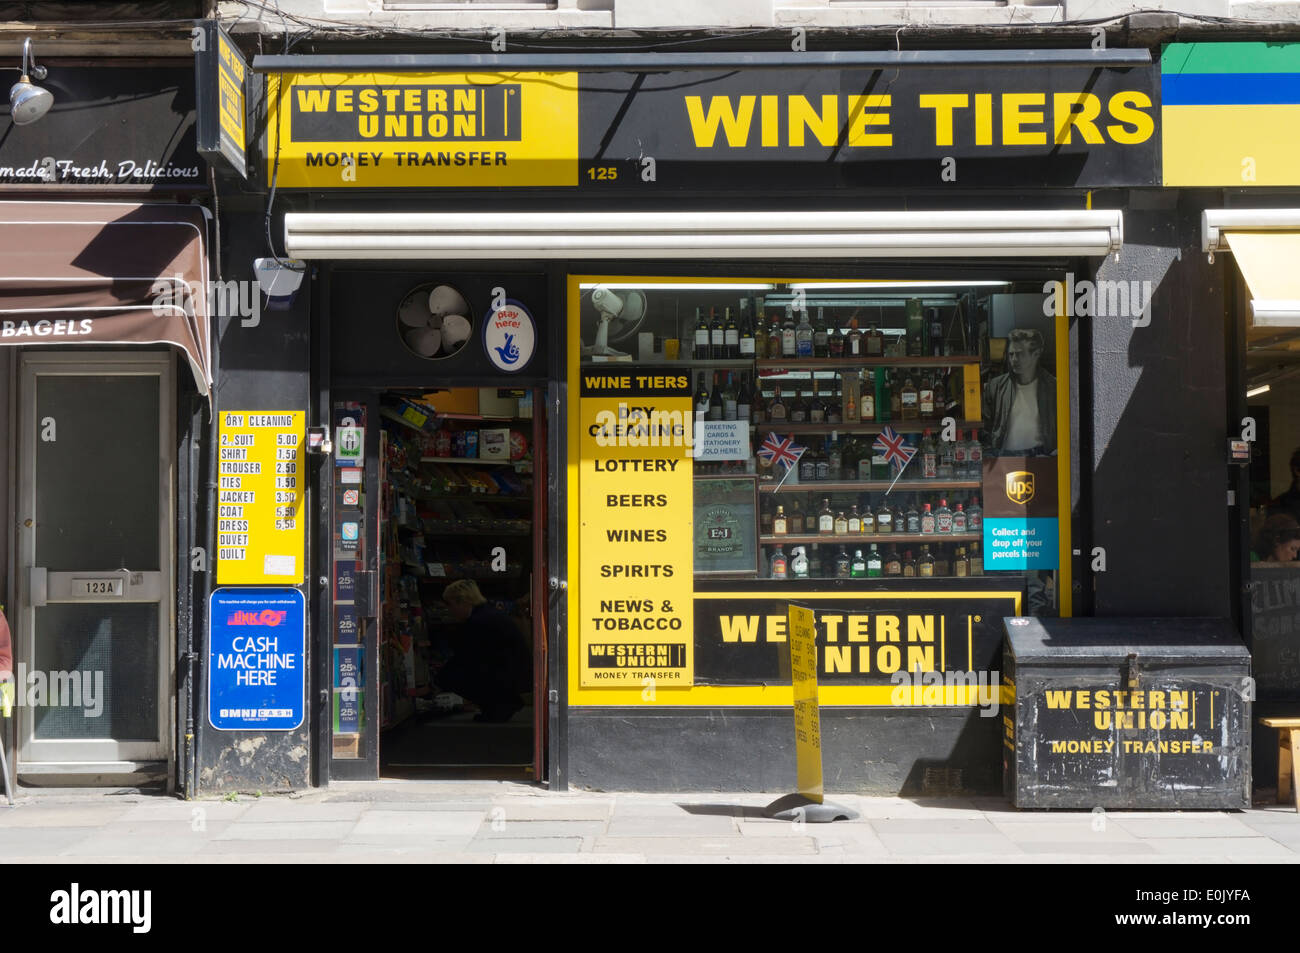 Wine Tiers shop in Leman Street, London. Stock Photo